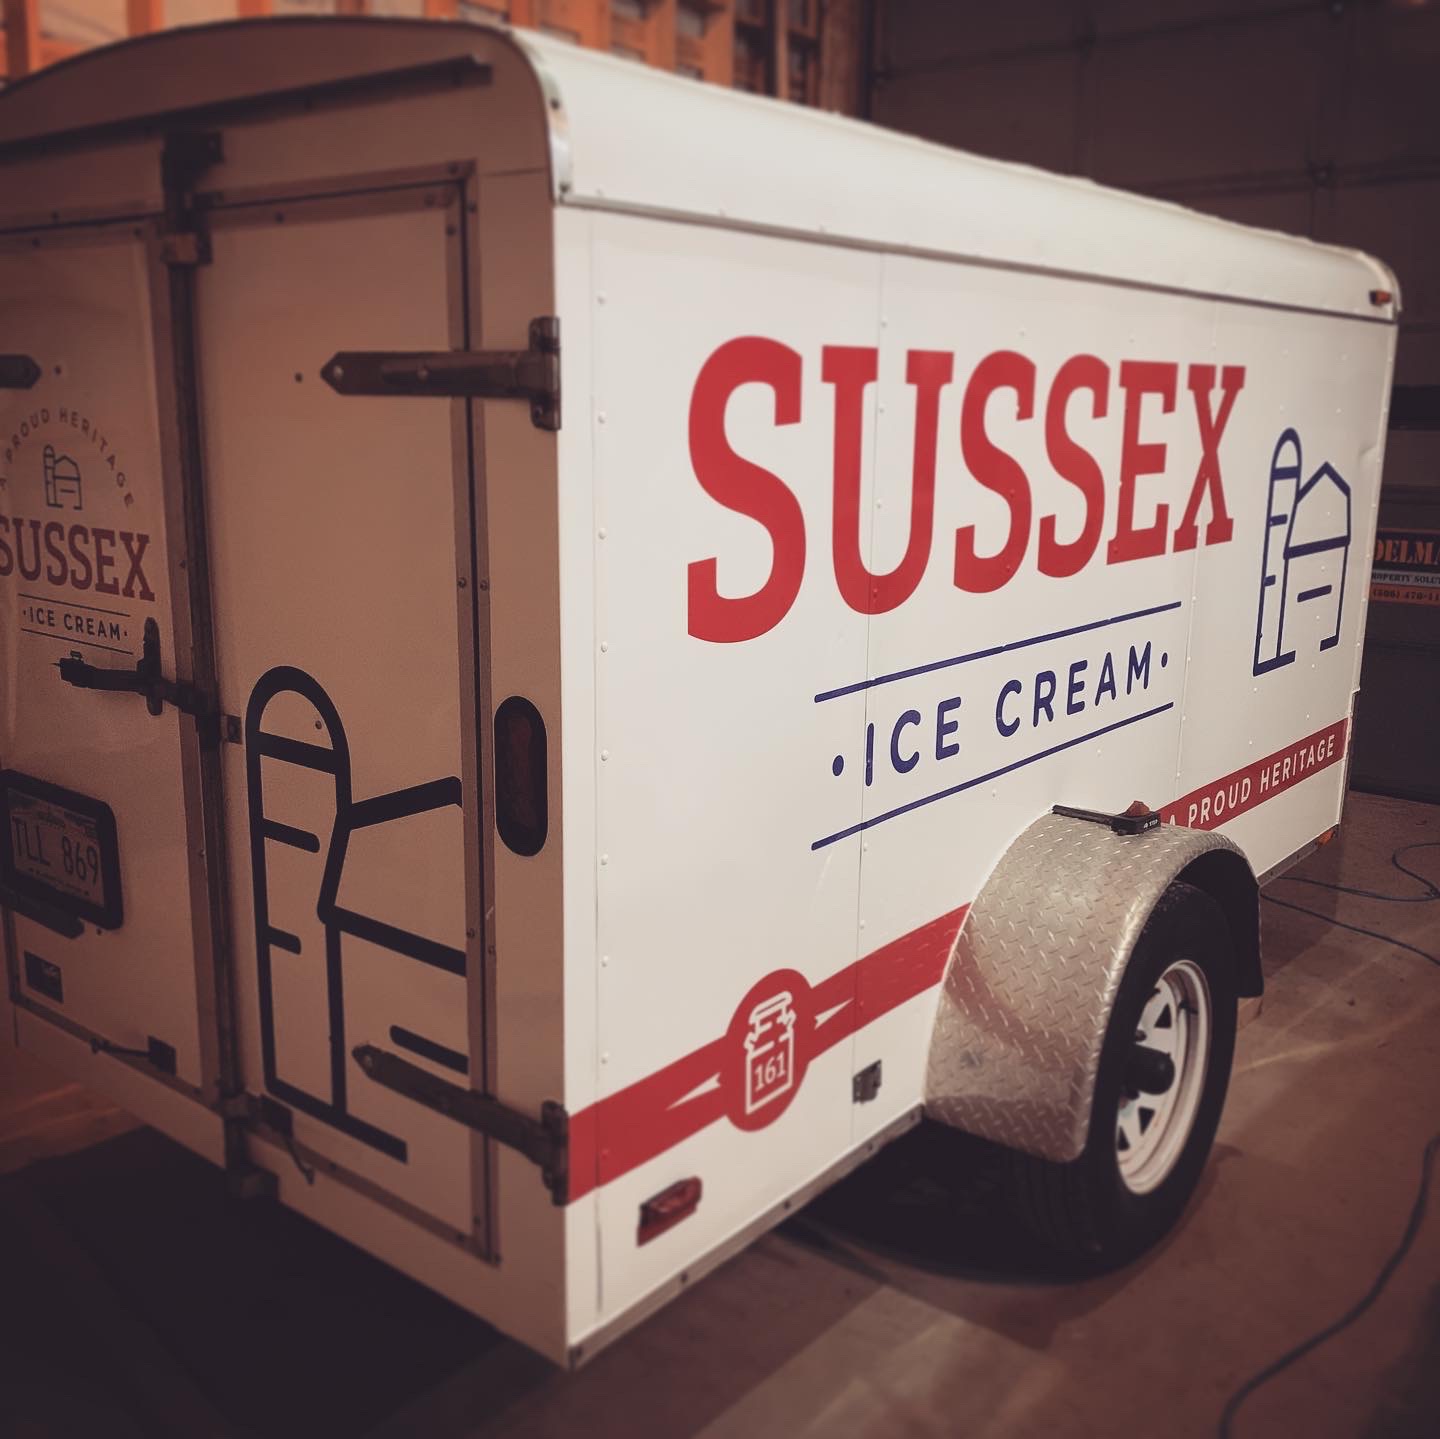 51-sussex-ice-cream-trailer-wrapjpg.jpg